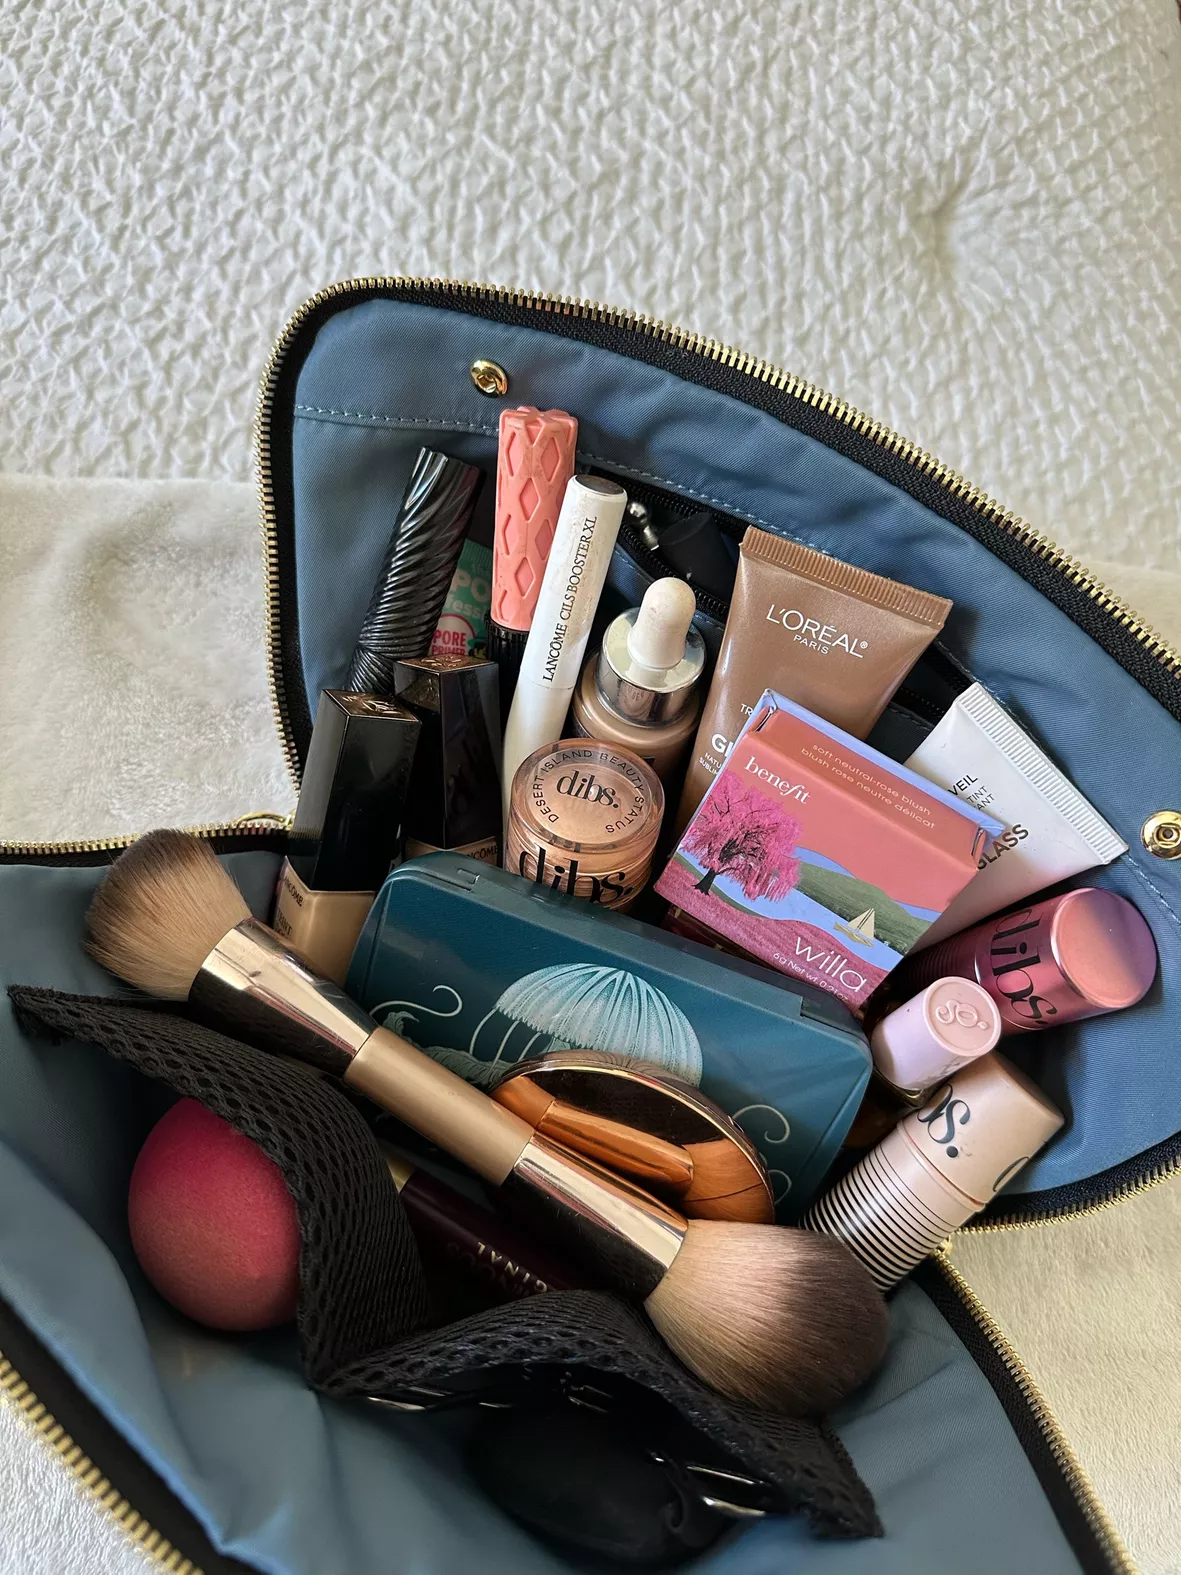 Travel Makeup Brush Holder,Make Up … curated on LTK